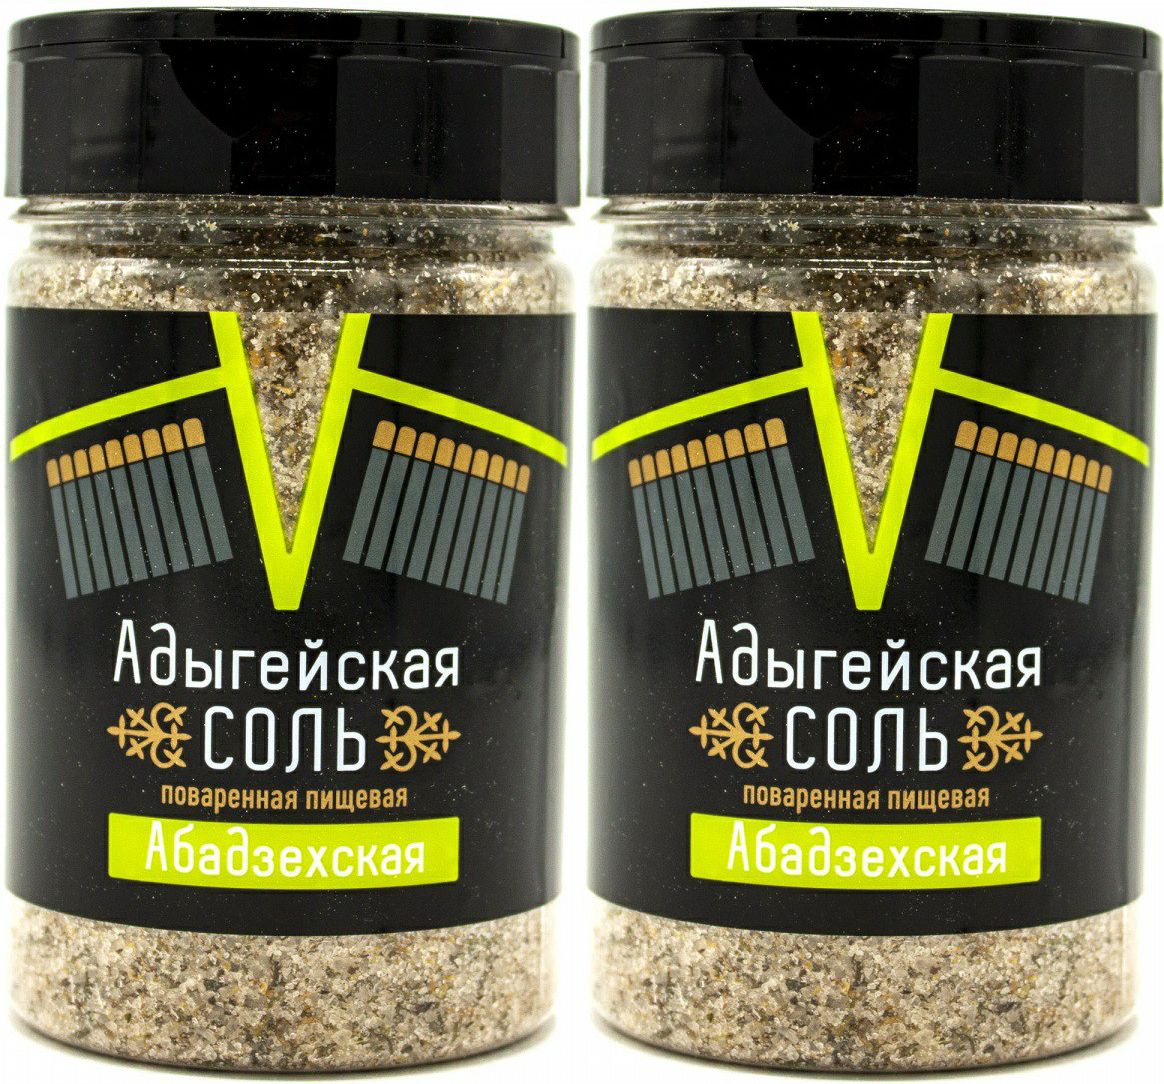 Соль каменная Адыгейская Абадзехская, комплект: 2 упаковки по 300 г - купить с доставкой по выгодным ценам в интернет-магазине OZON (694694738)